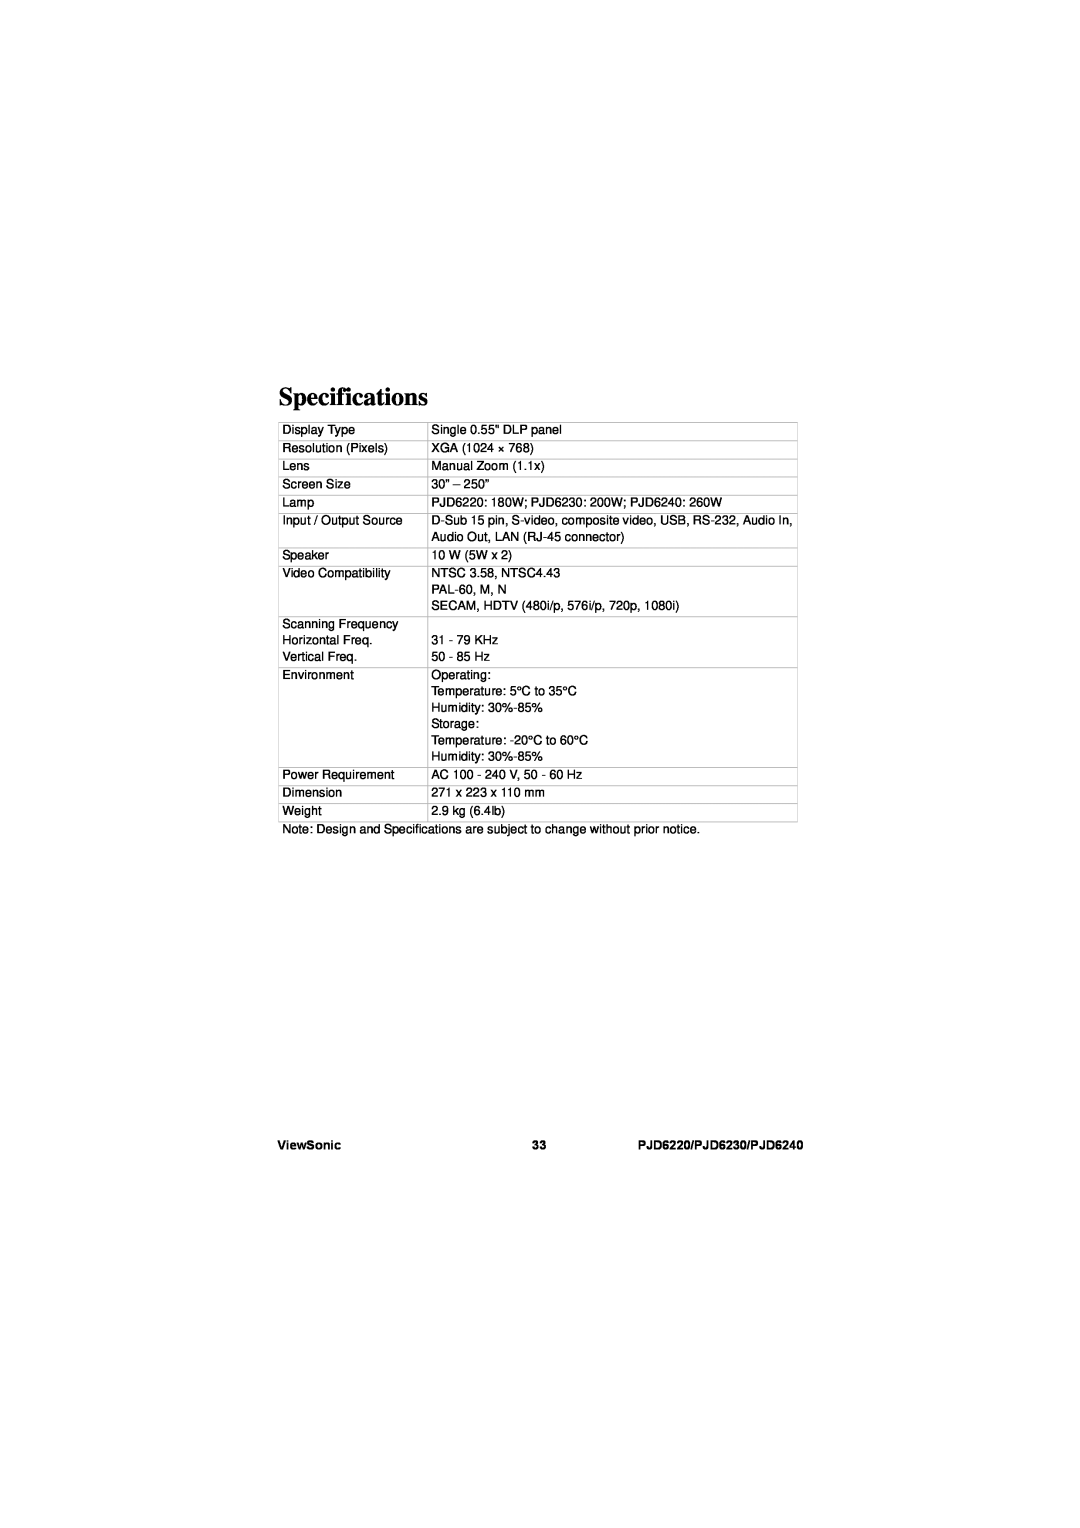 ViewSonic warranty Specifications, ViewSonic, PJD6220/PJD6230/PJD6240 